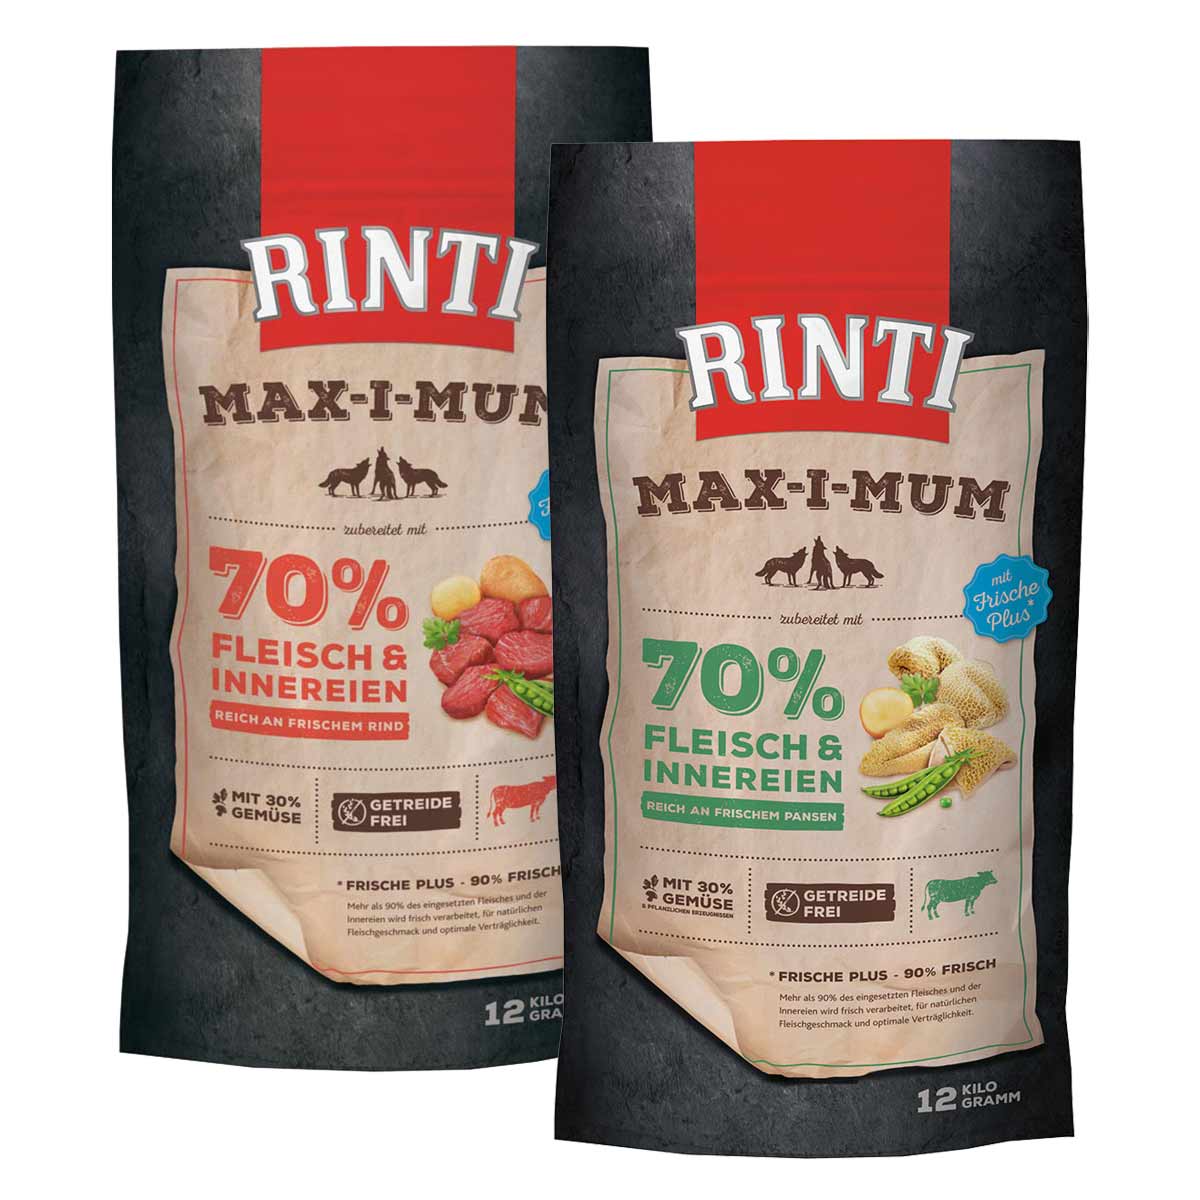 Rinti Max-i-Mum Rind und Pansen Mixpaket 2x12kg